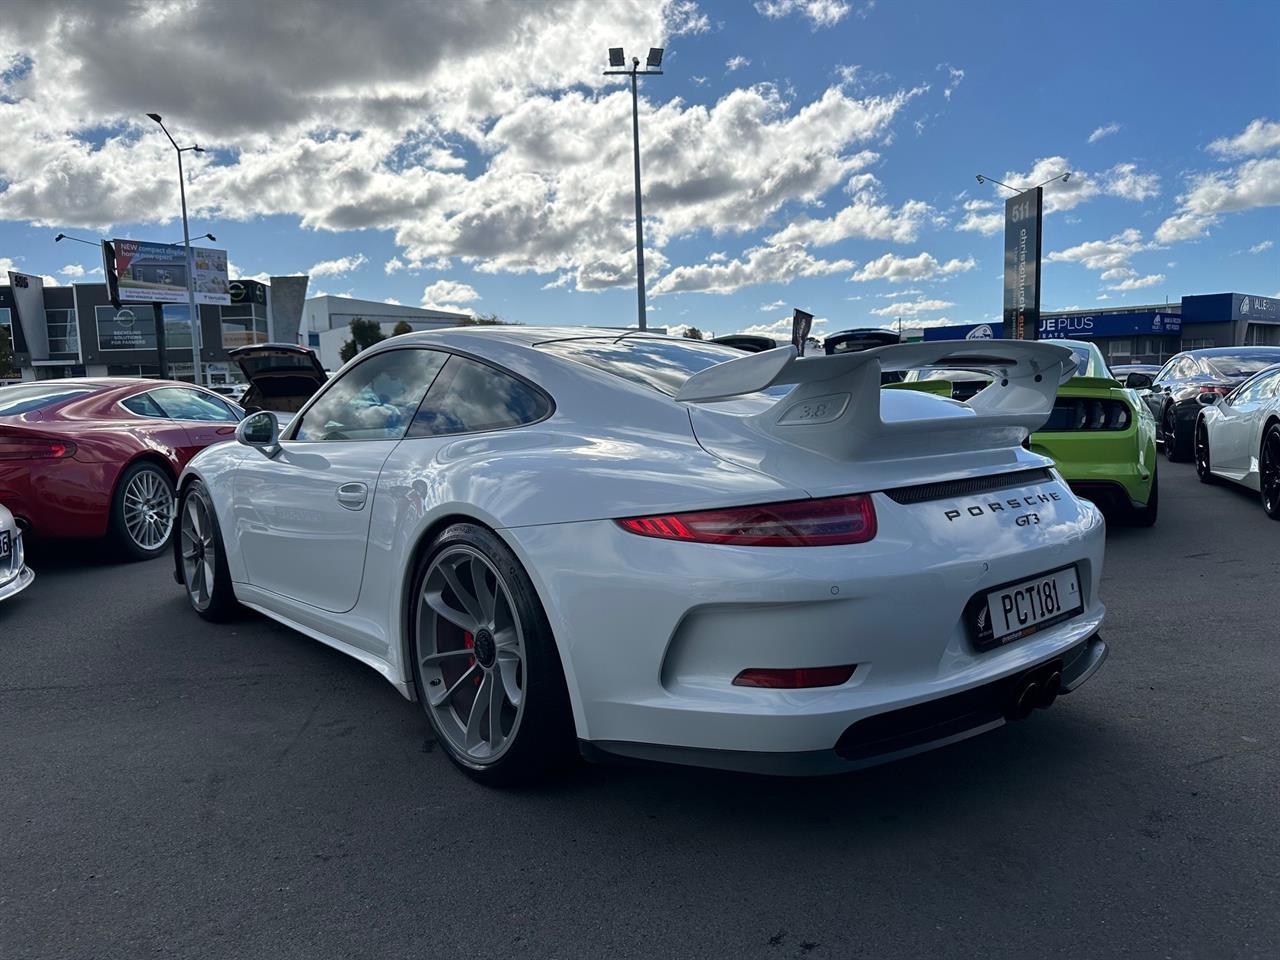 image-3, 2015 Porsche 911 991 GT3 at Christchurch